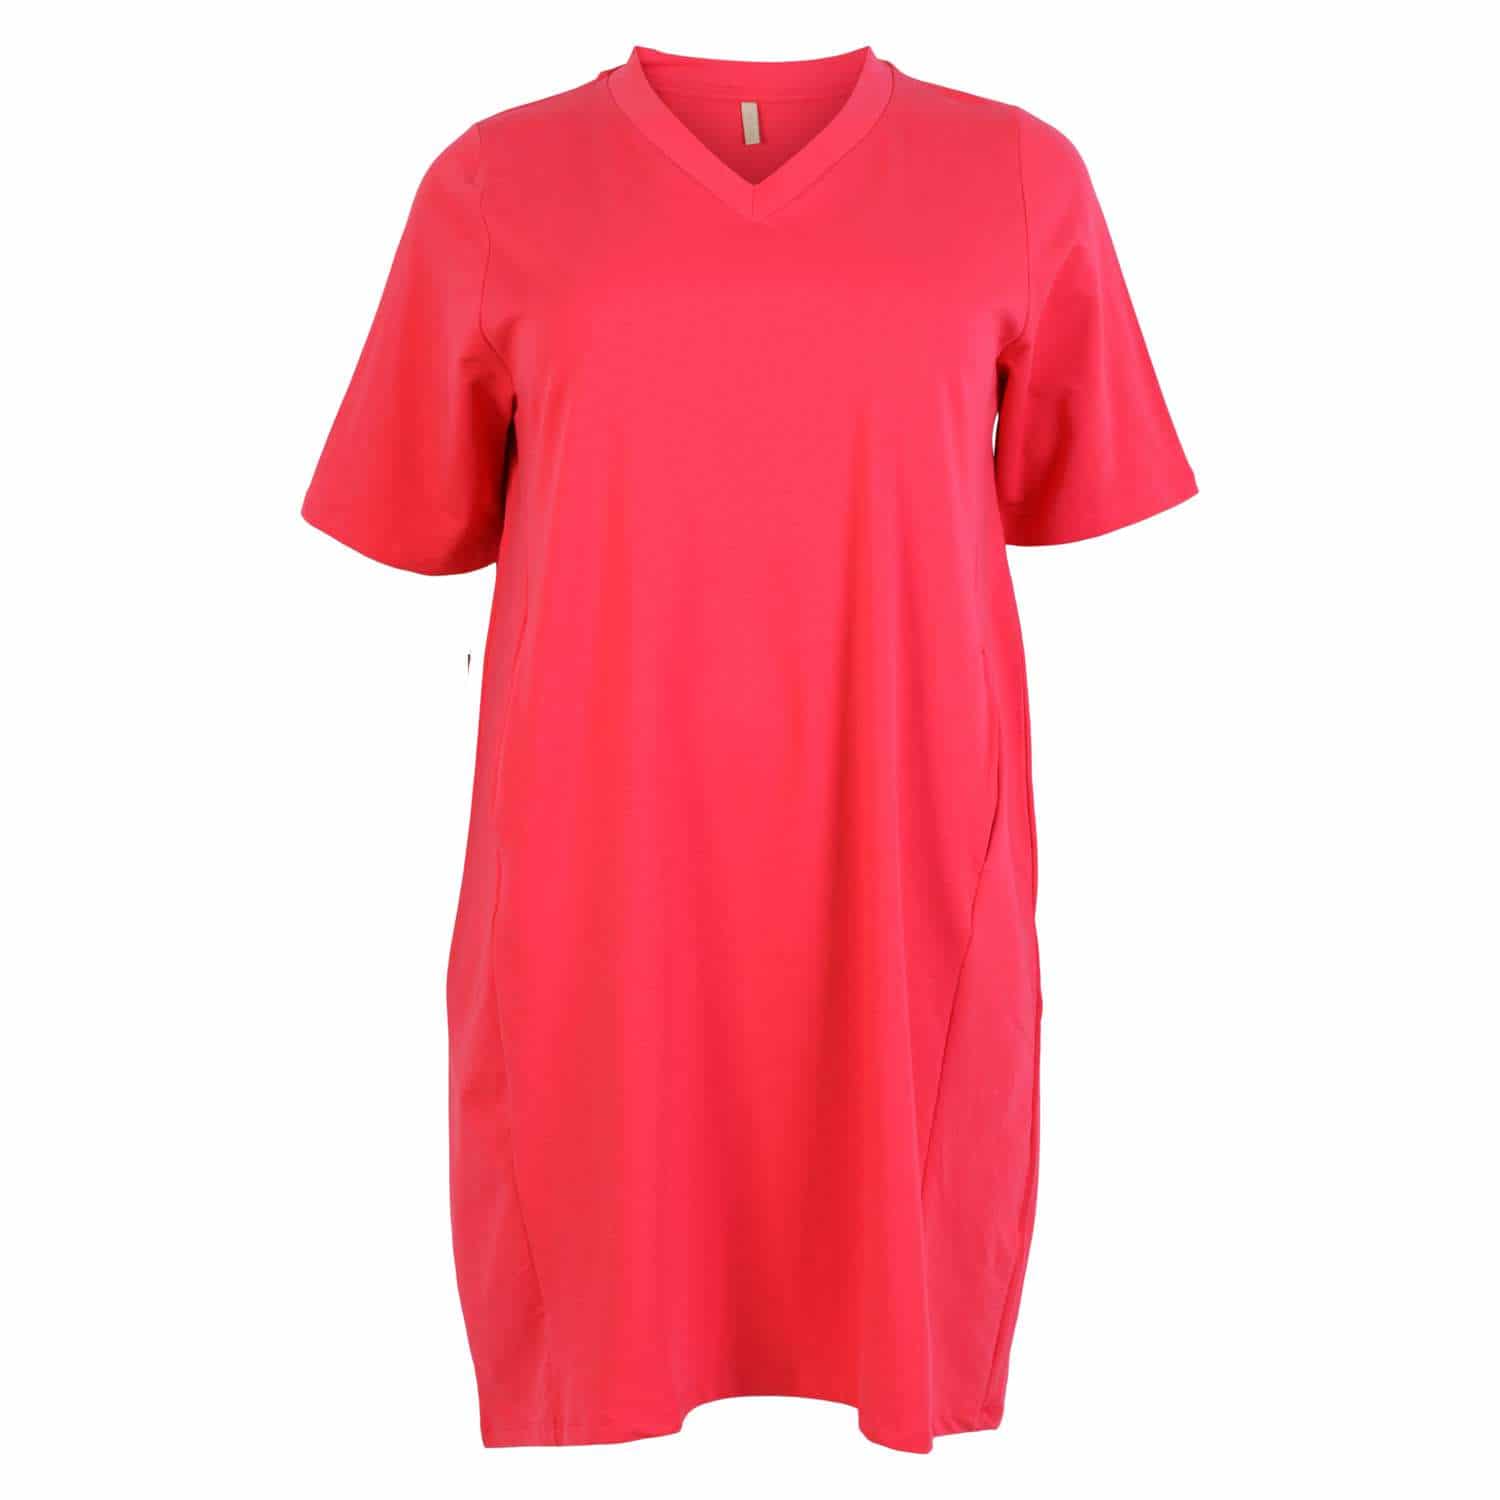 vigtig klassisk ironi Cassiopeia - Ullabalula plus size dame sweat kjole - Rød - Str. 46/48 - Rød  Kjole